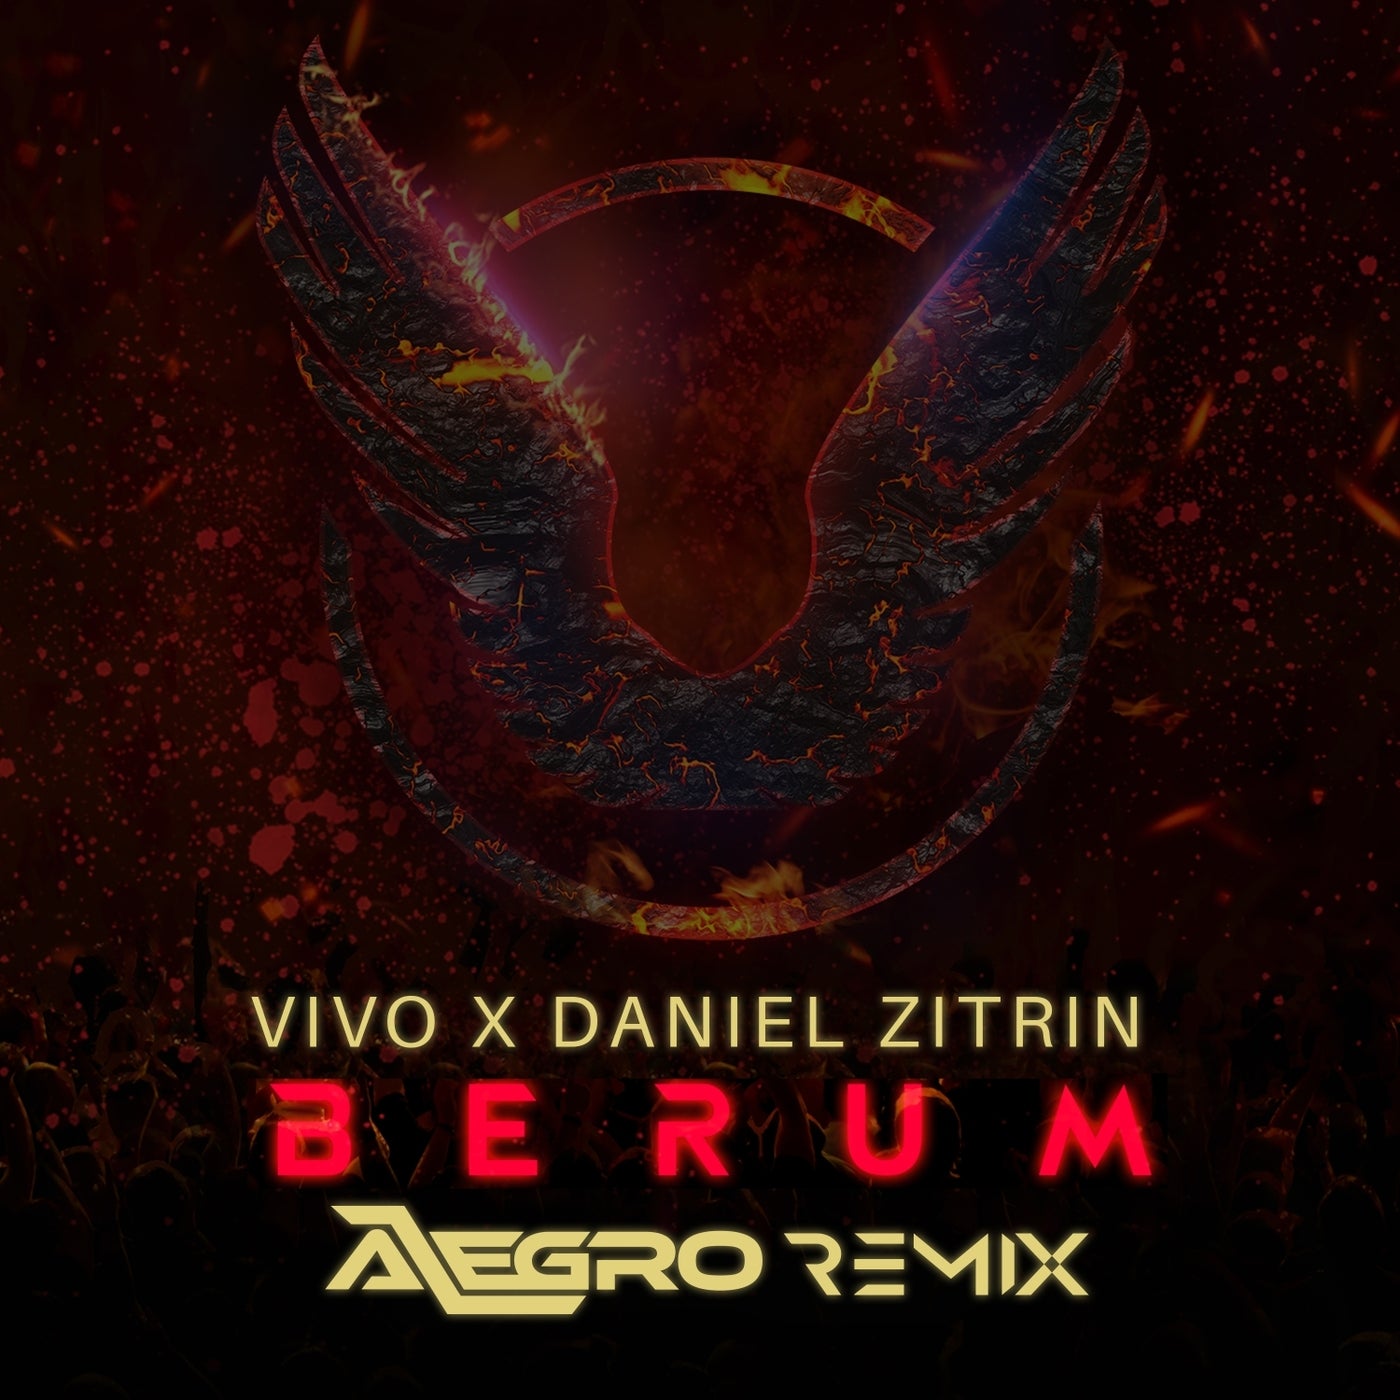 Berum (Alegro Remix)